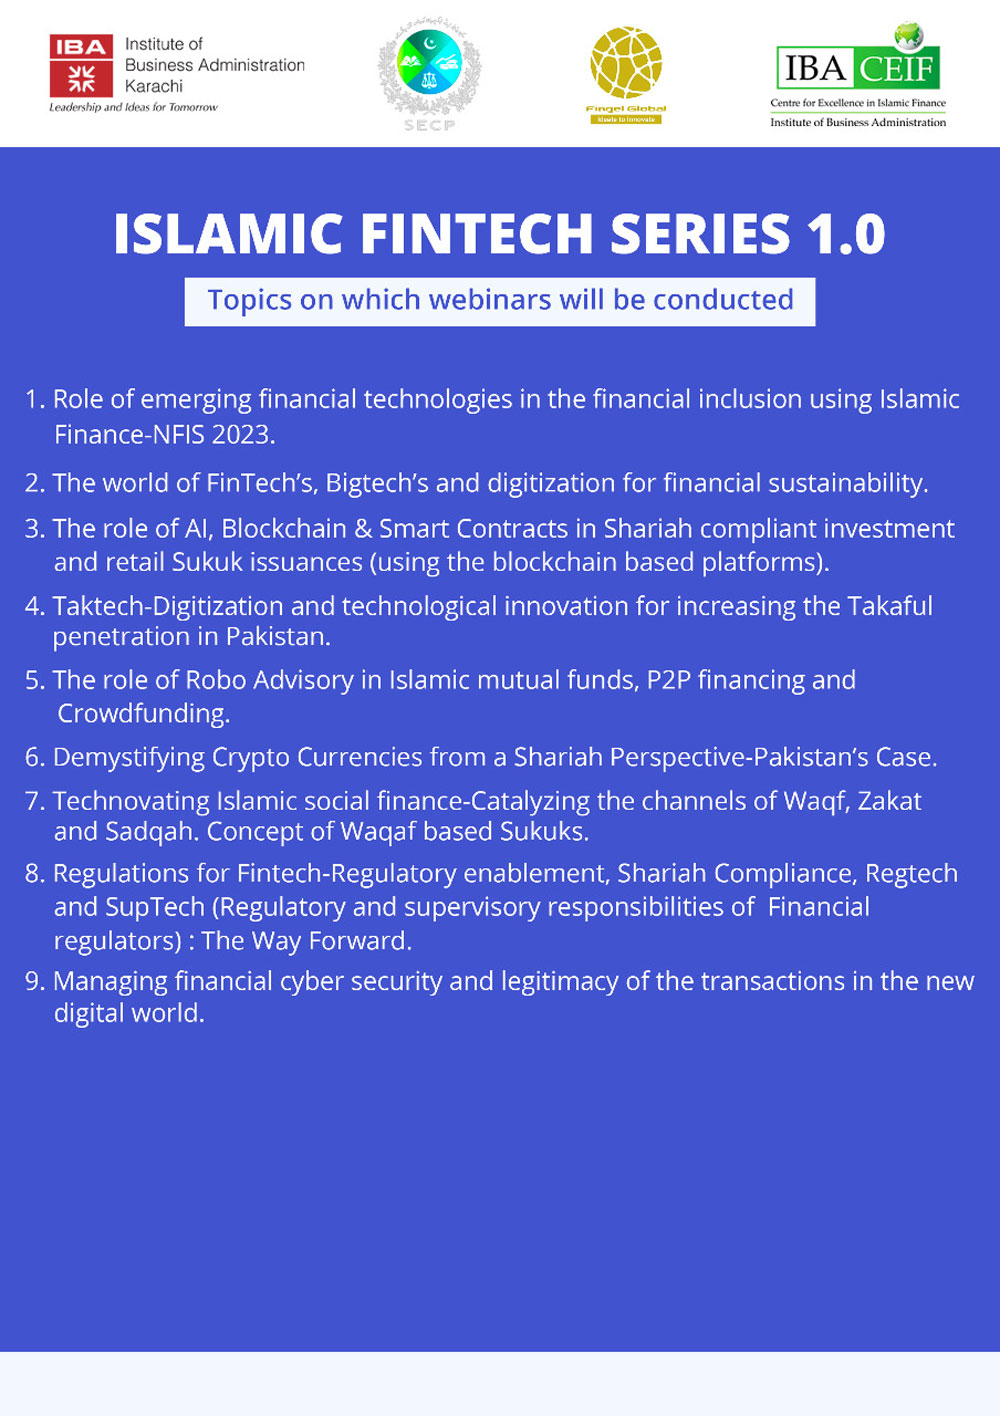 Islamic Fintech Series 1.0 